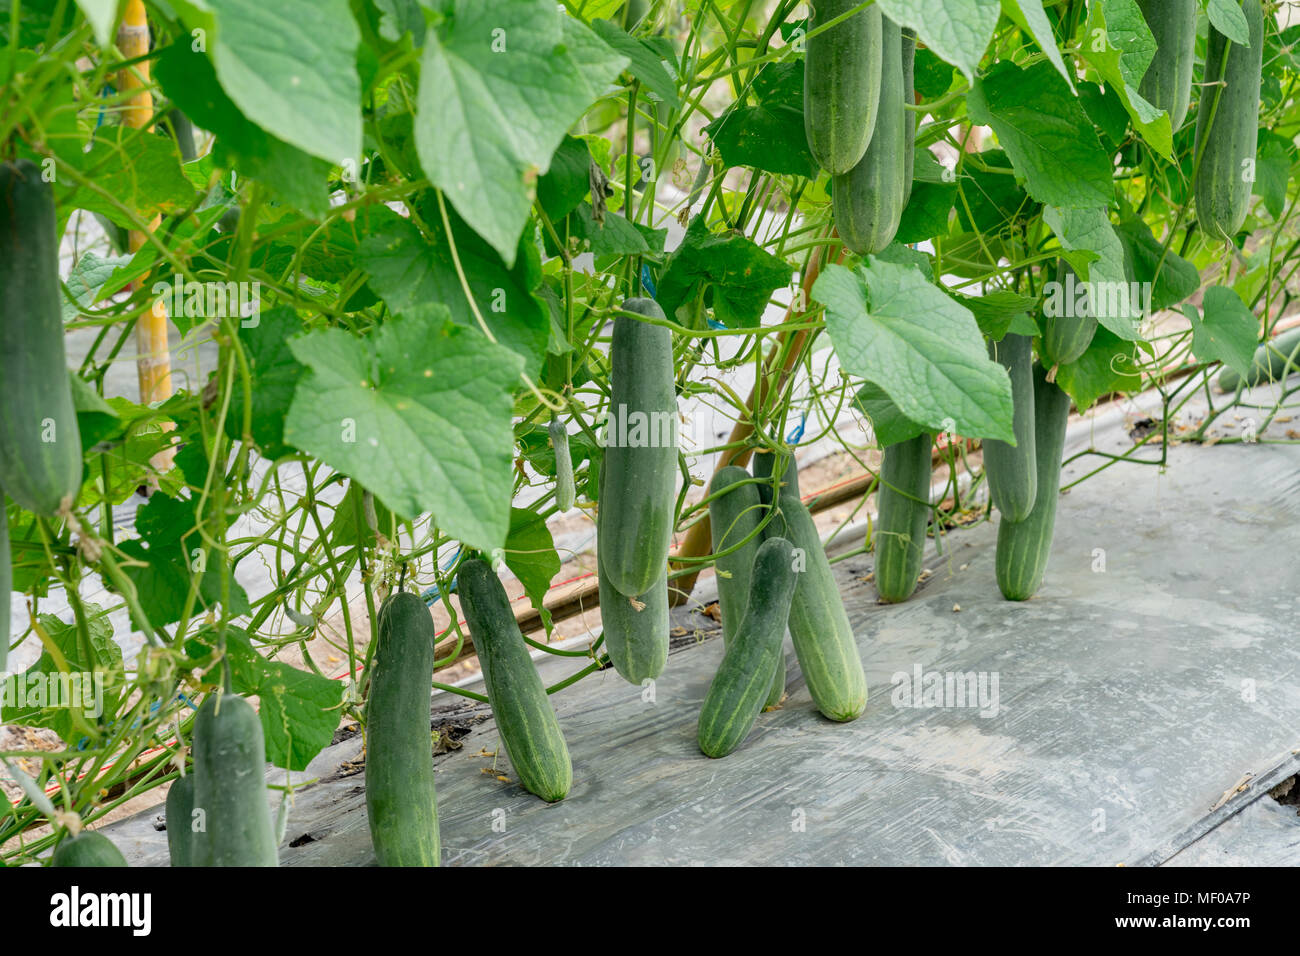 Agricultura - un campo de pepino plantas crecen a través de una